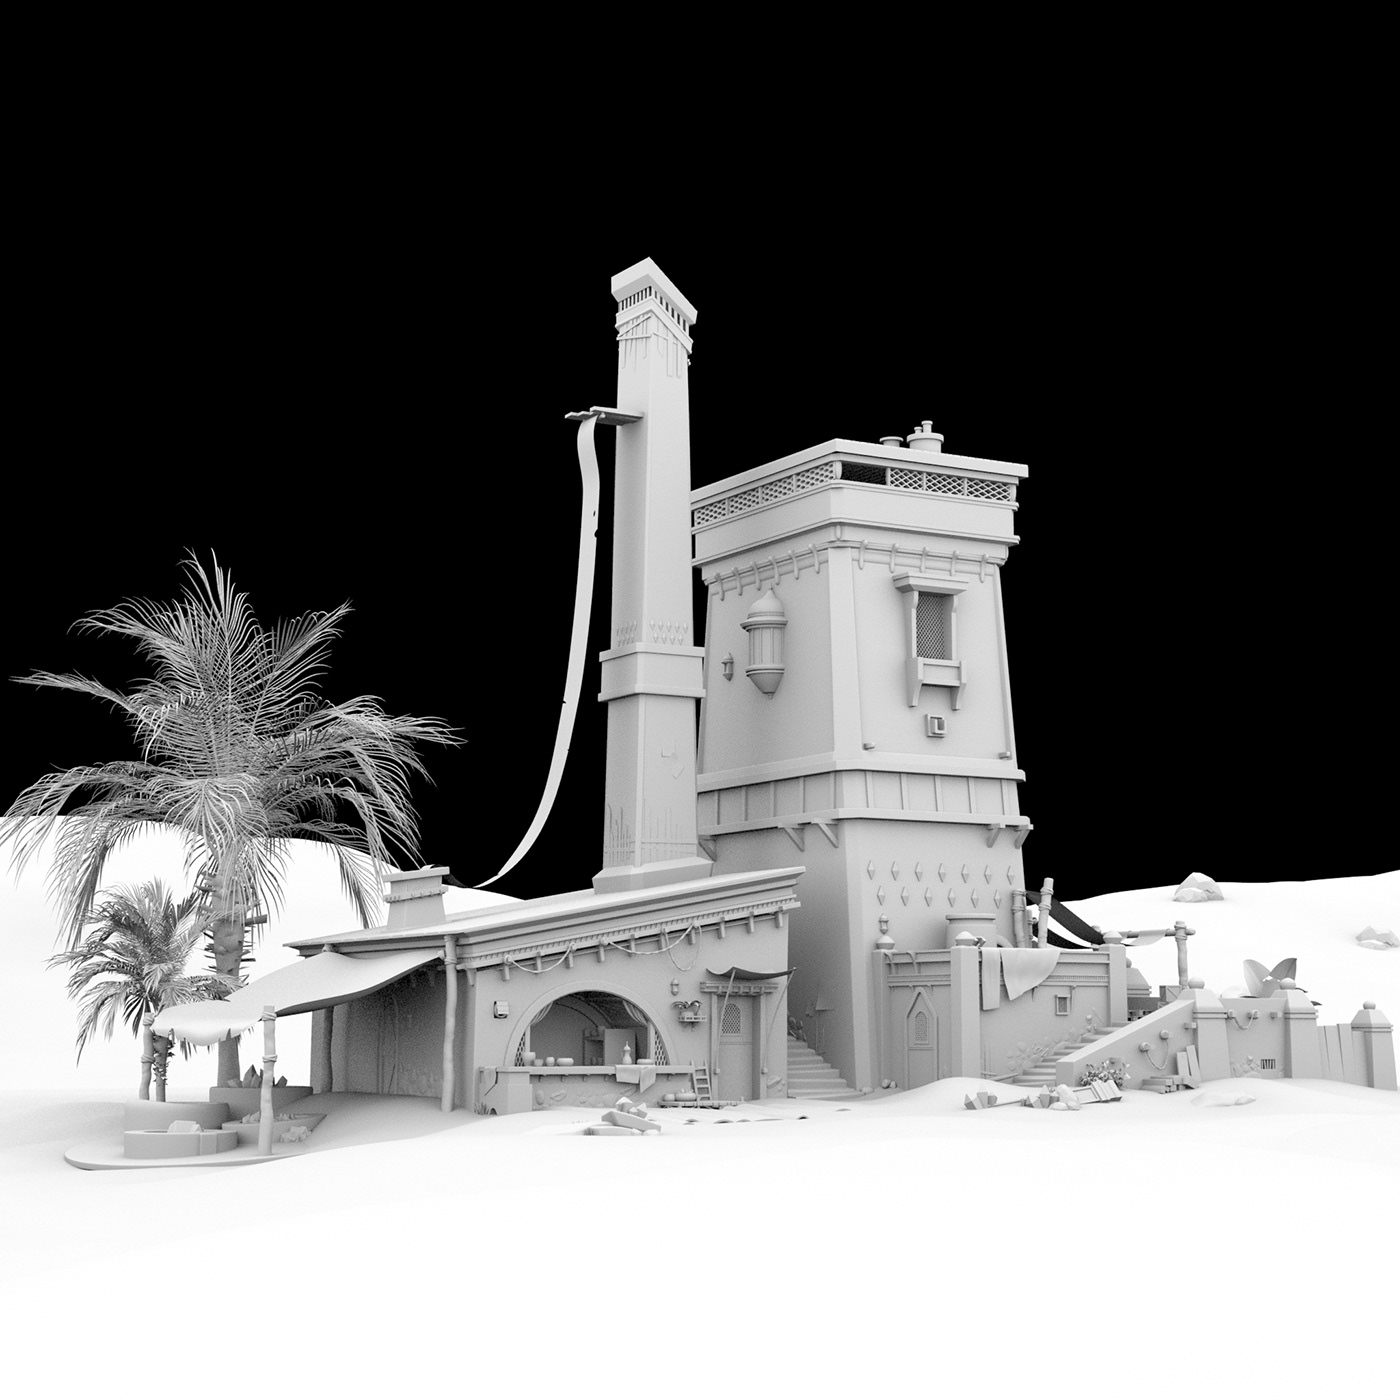 middleeast building 3D 3d modeling Render architecture blender blender3d autodesk maya